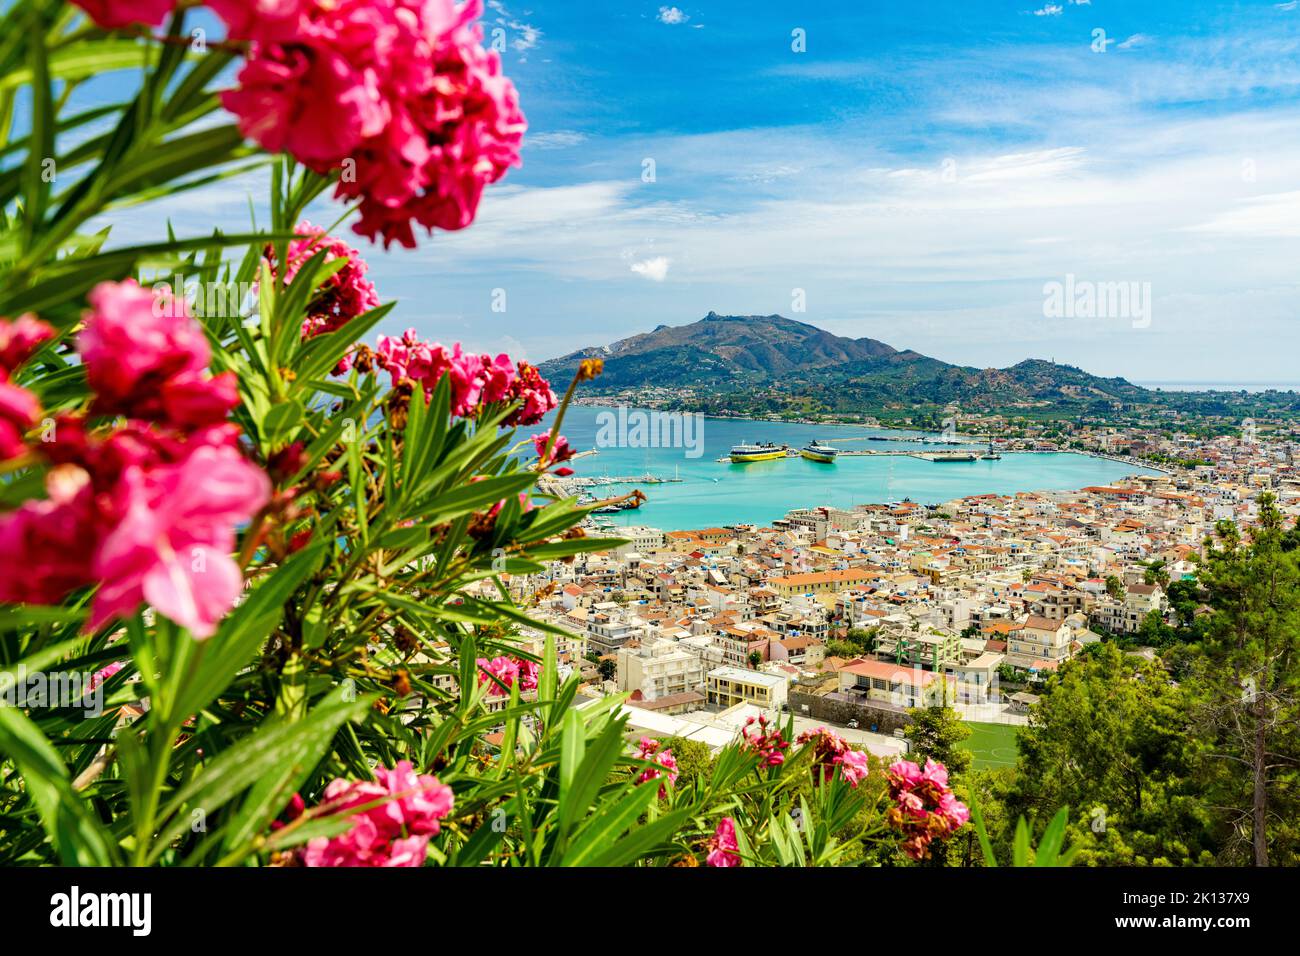 Malerische Aussicht auf die Altstadt von Zakynthos und das Meer vom ikonischen Aussichtspunkt Bohali auf dem blühenden Hügel, Zakynthos, Ionische Inseln, griechische Inseln, Griechenland, Europa Stockfoto